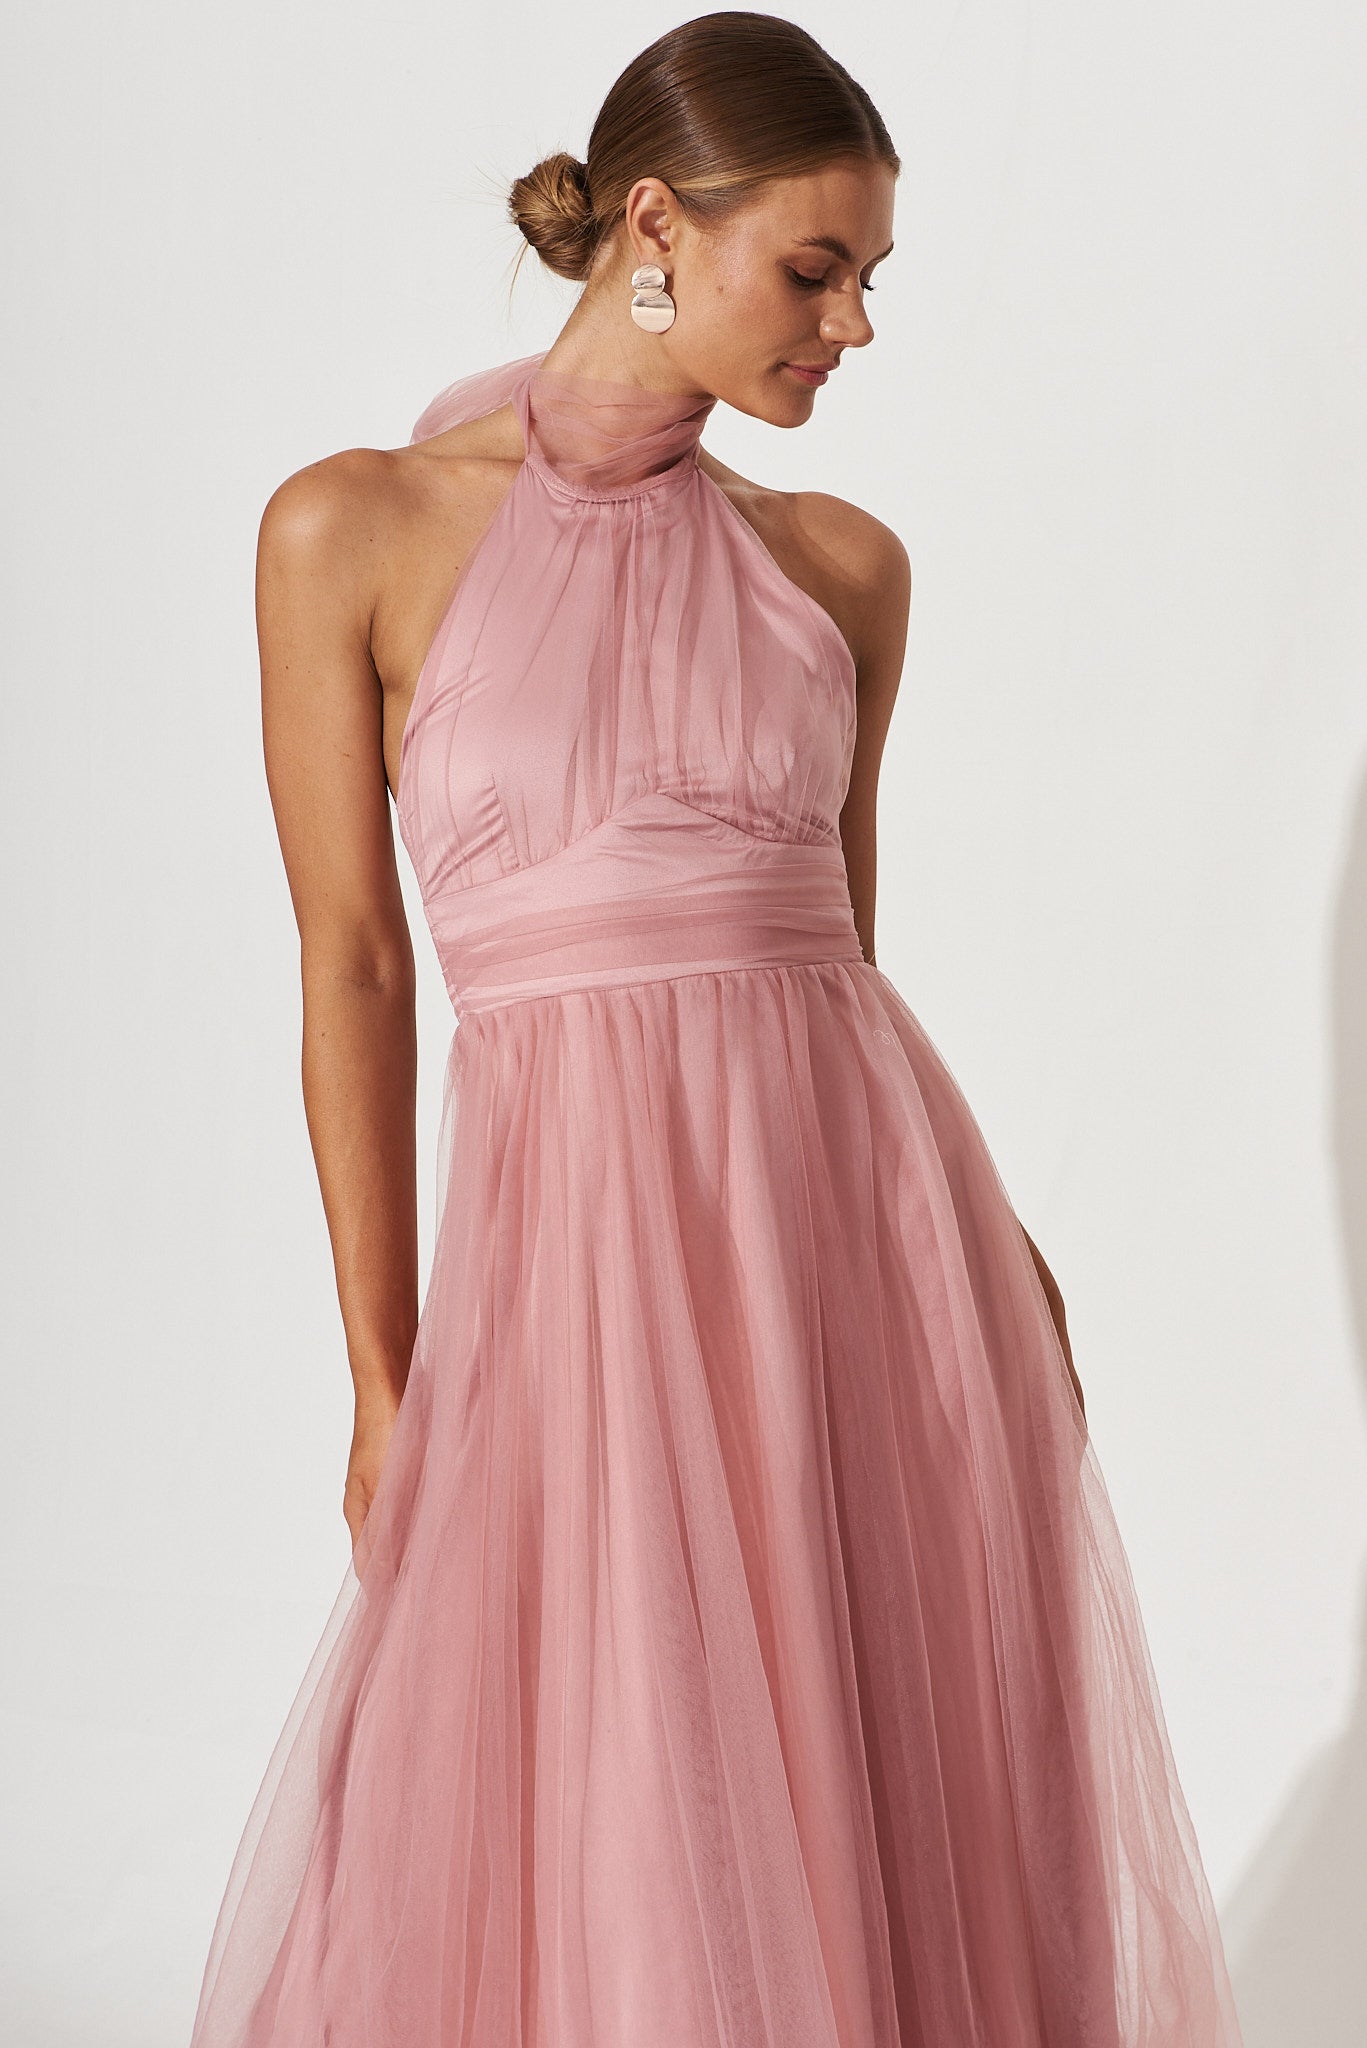 Satin Blush Dress - Pink Tie-Back Dress - Halter Midi Dress